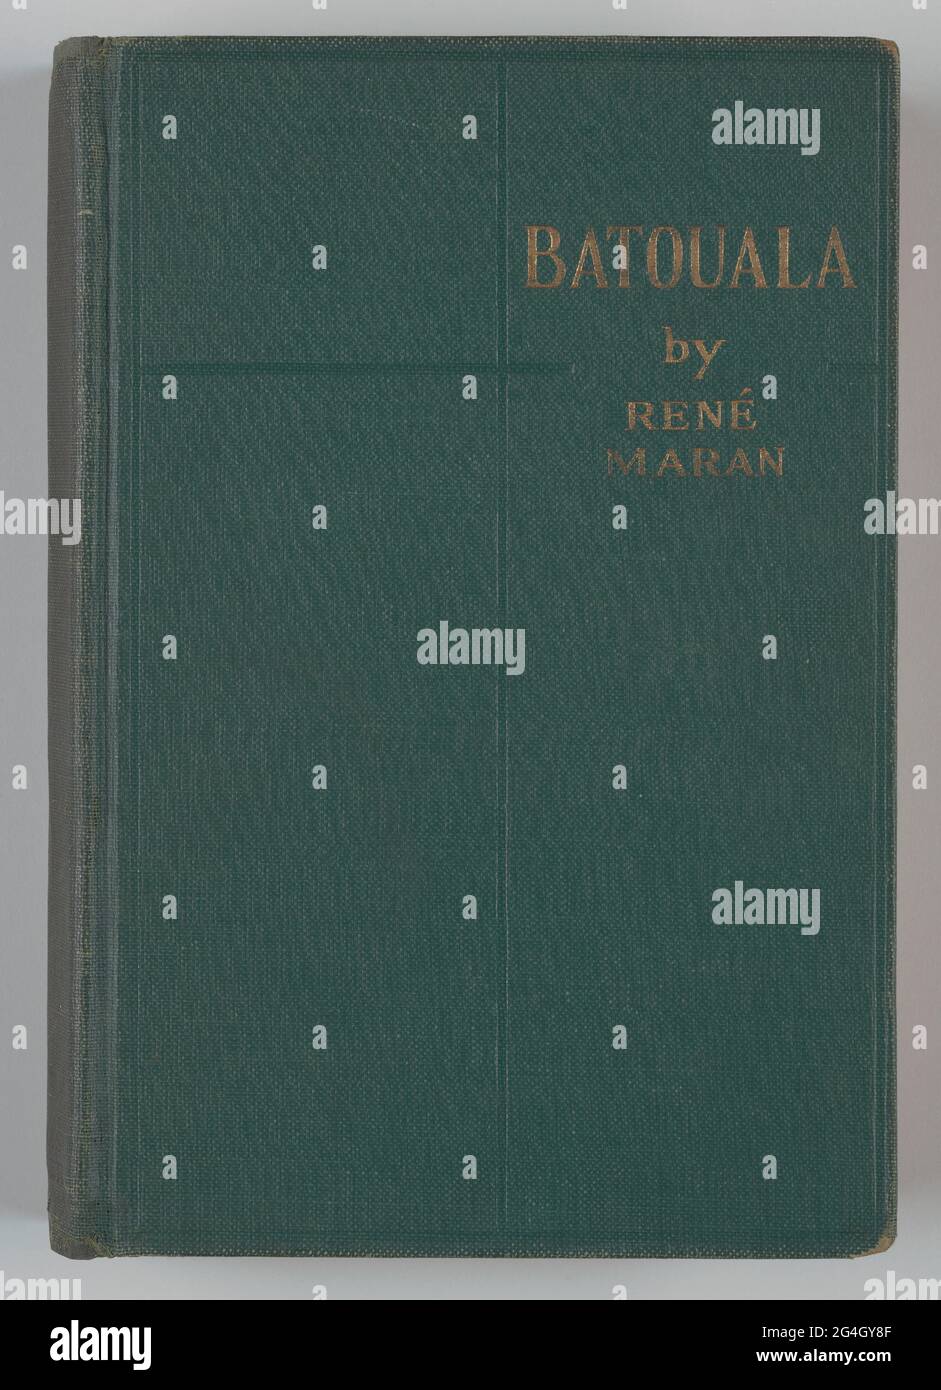 Batouala zeichnet ein atemberaubendes Porträt des Lebens eines afrikanischen Stammes und der schädlichen Auswirkungen des französischen Regimes auf die Gesellschaft des Stammes&#x2019. Als Ren&#xe9; Maran, ein französisch-guyanesischer Dichter und Romancier, 1921 seinen Debütroman Batouala veröffentlichte, tat er dies mit der Absicht, das französische Regime und ihre Präsenz in Afrika zu kritisieren, aber seine Auswirkungen waren weit tiefer als erwartet. Er wurde der erste Schriftsteller afrikanischer Abstammung, der mit dem französischen Prix Goncourt ausgezeichnet wurde, der damals die höchste literarische Ehre war, die ein französischer Autor erhalten konnte. Verschiedene französische Kritiker Stockfoto